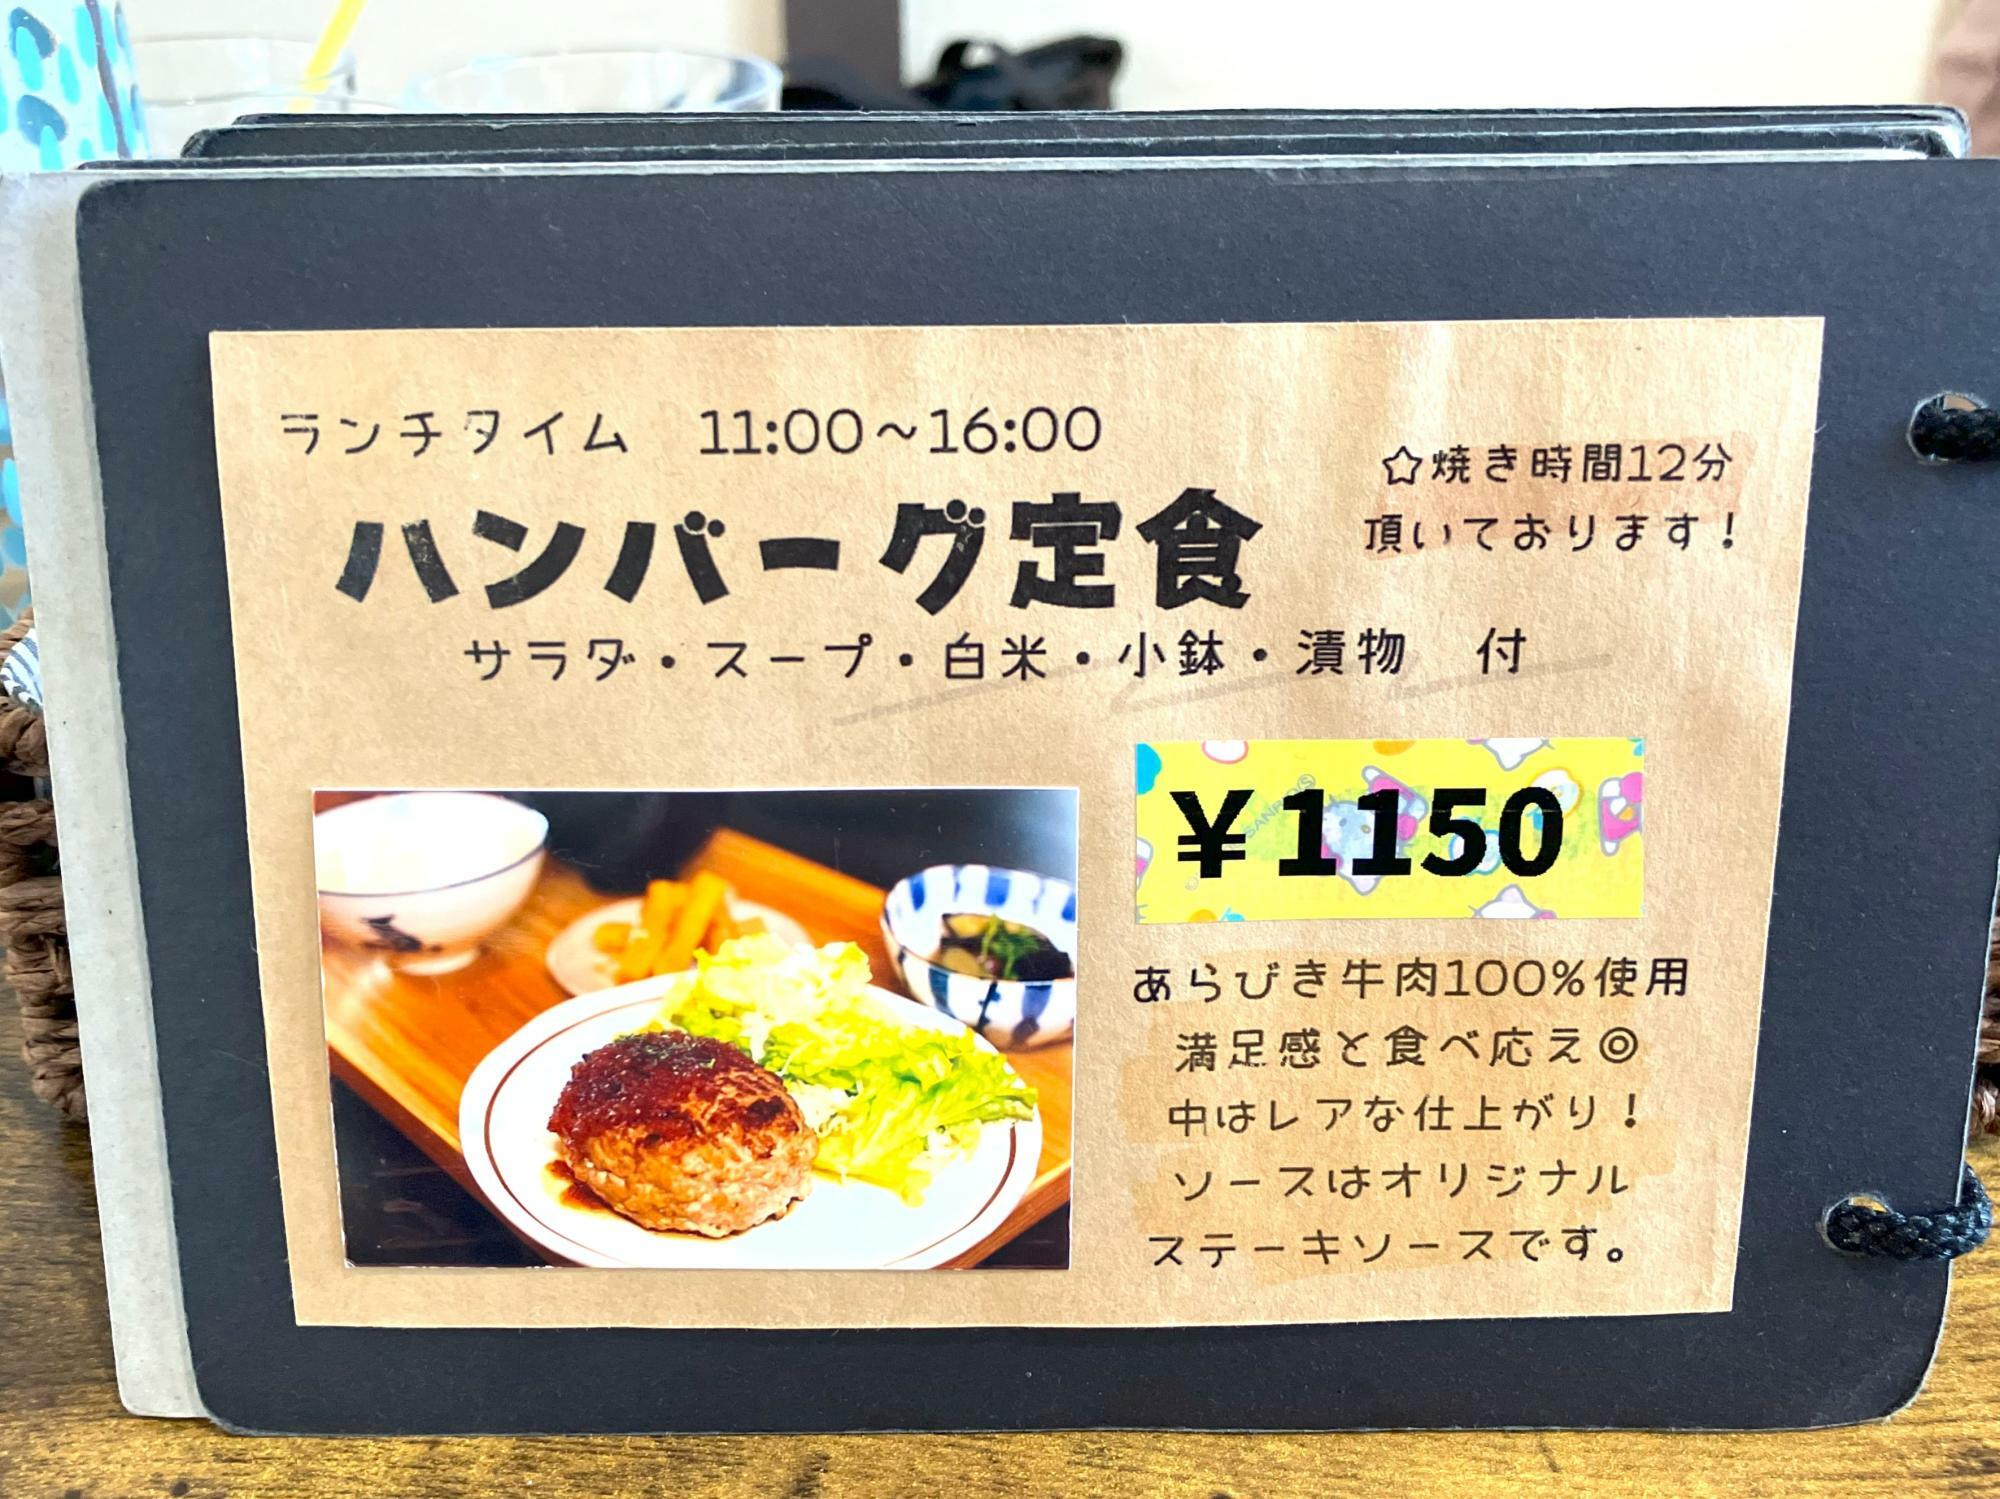 ハンバーグ定食1150円